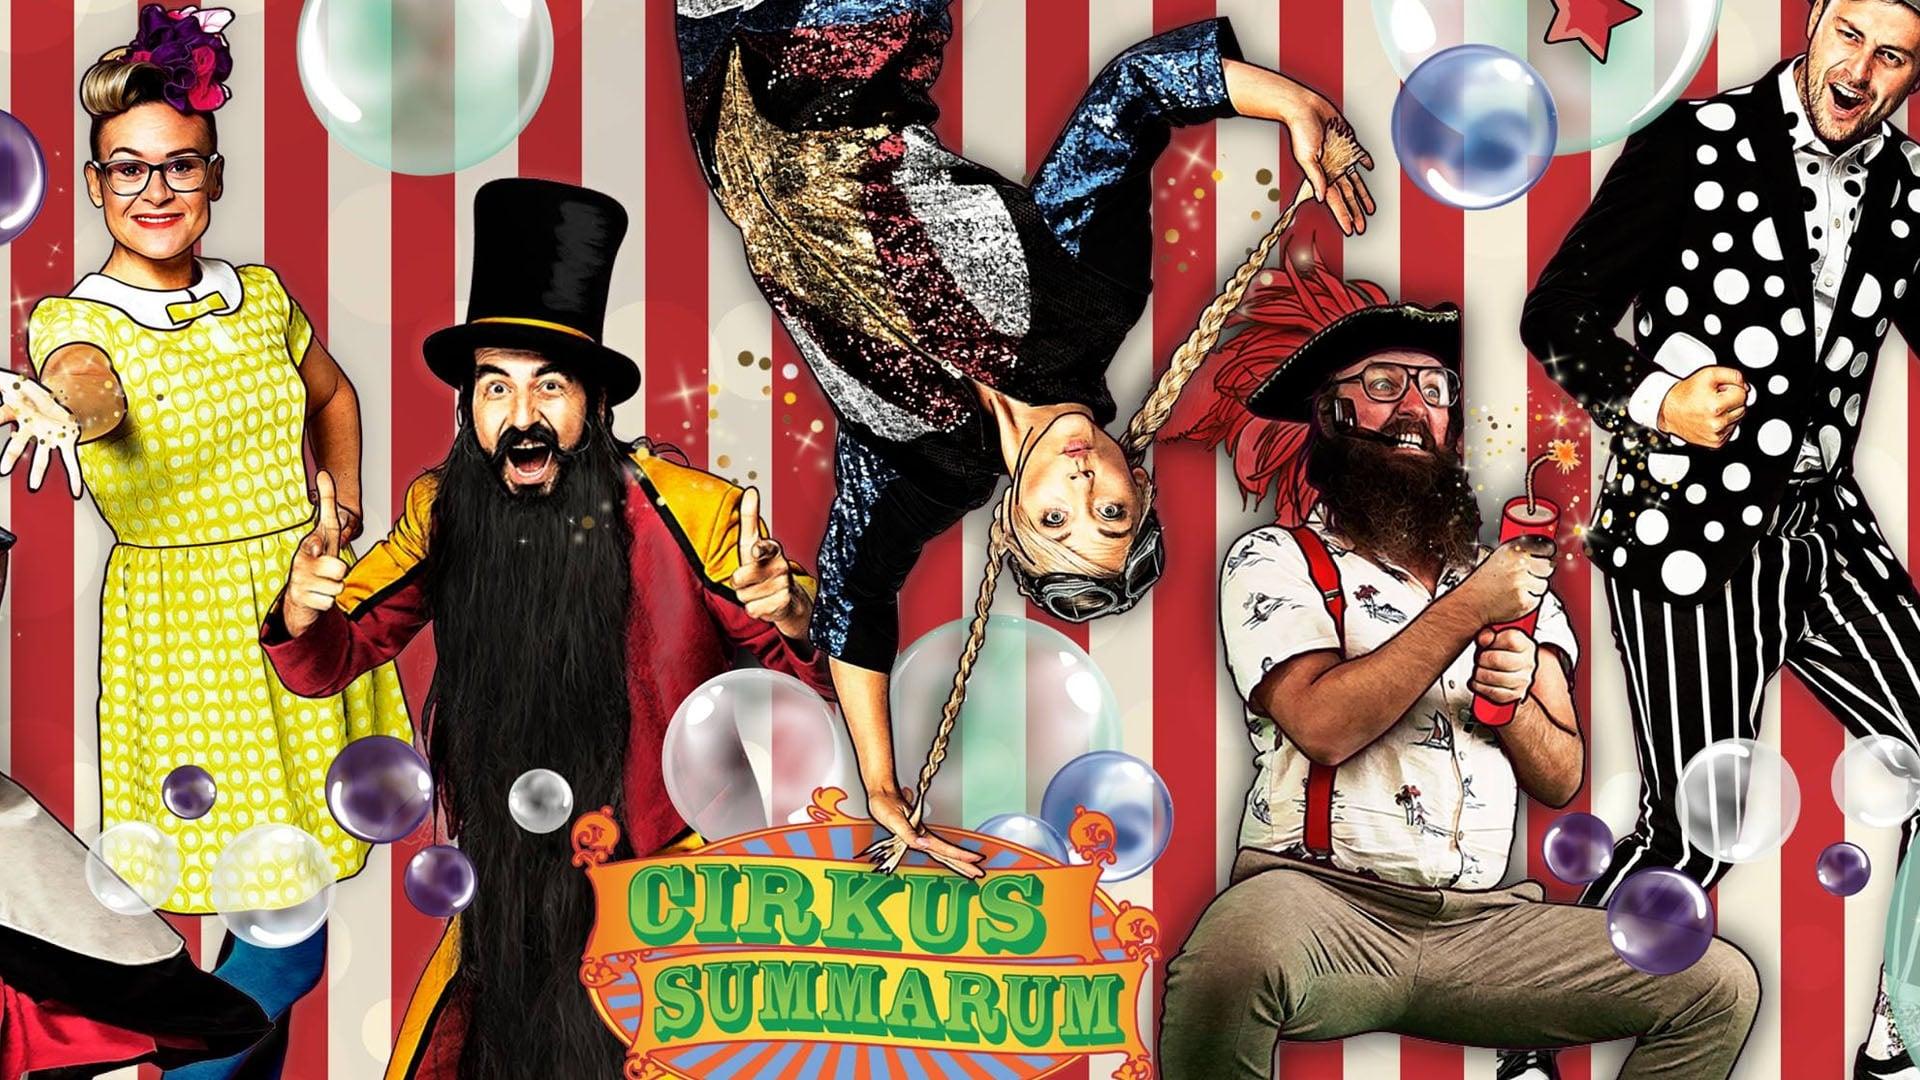 Cirkus Summarum 2019 backdrop